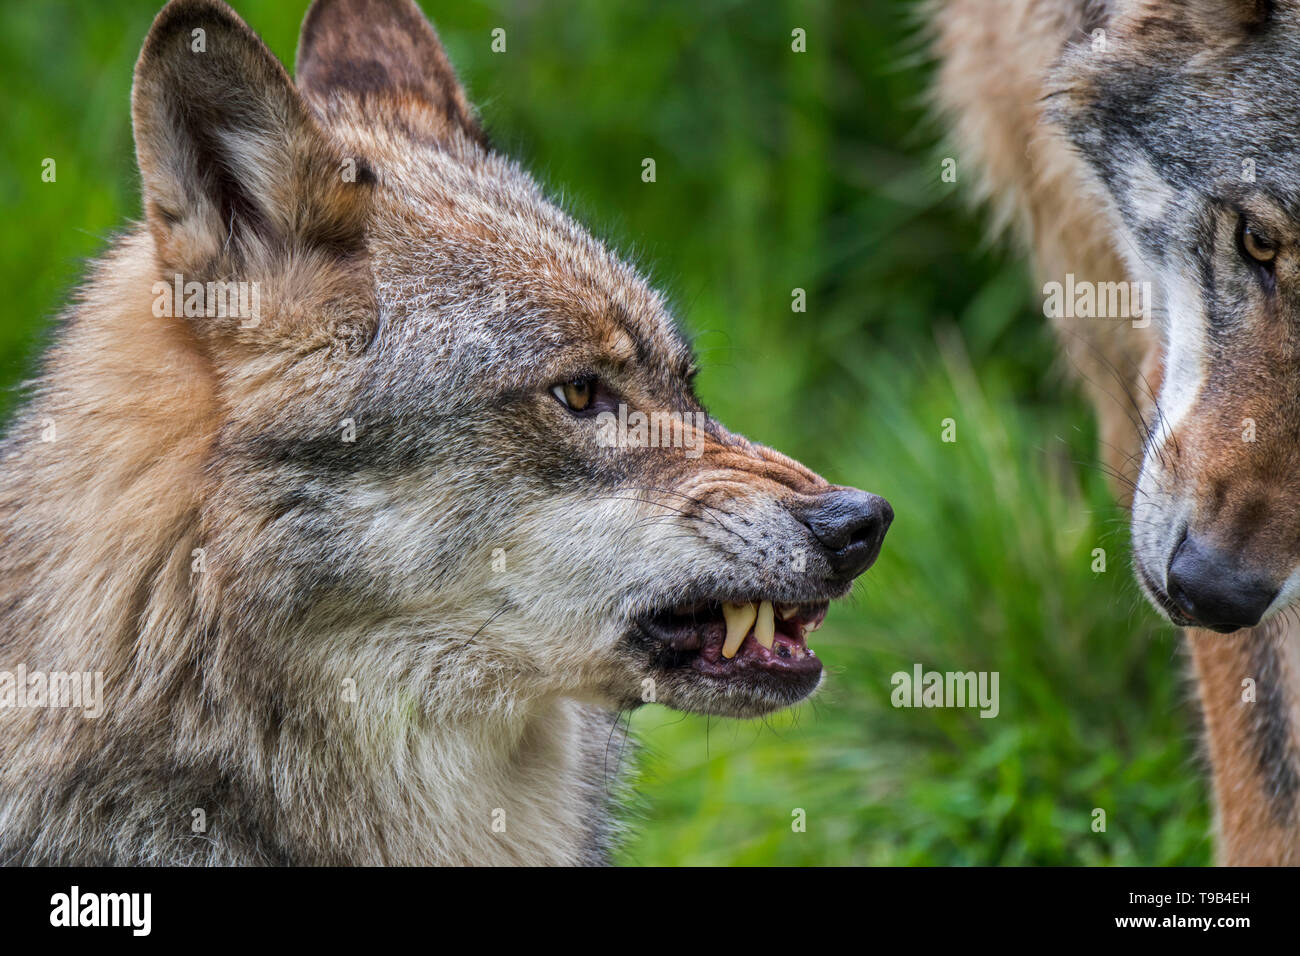 Arrabbiato, fiducioso e dominante il lupo (Canis lupus) che mostra le orecchie in posizione verso l'alto, stropicciata naso e che riporti le sue zanne mentre ululano / ringhiando Foto Stock